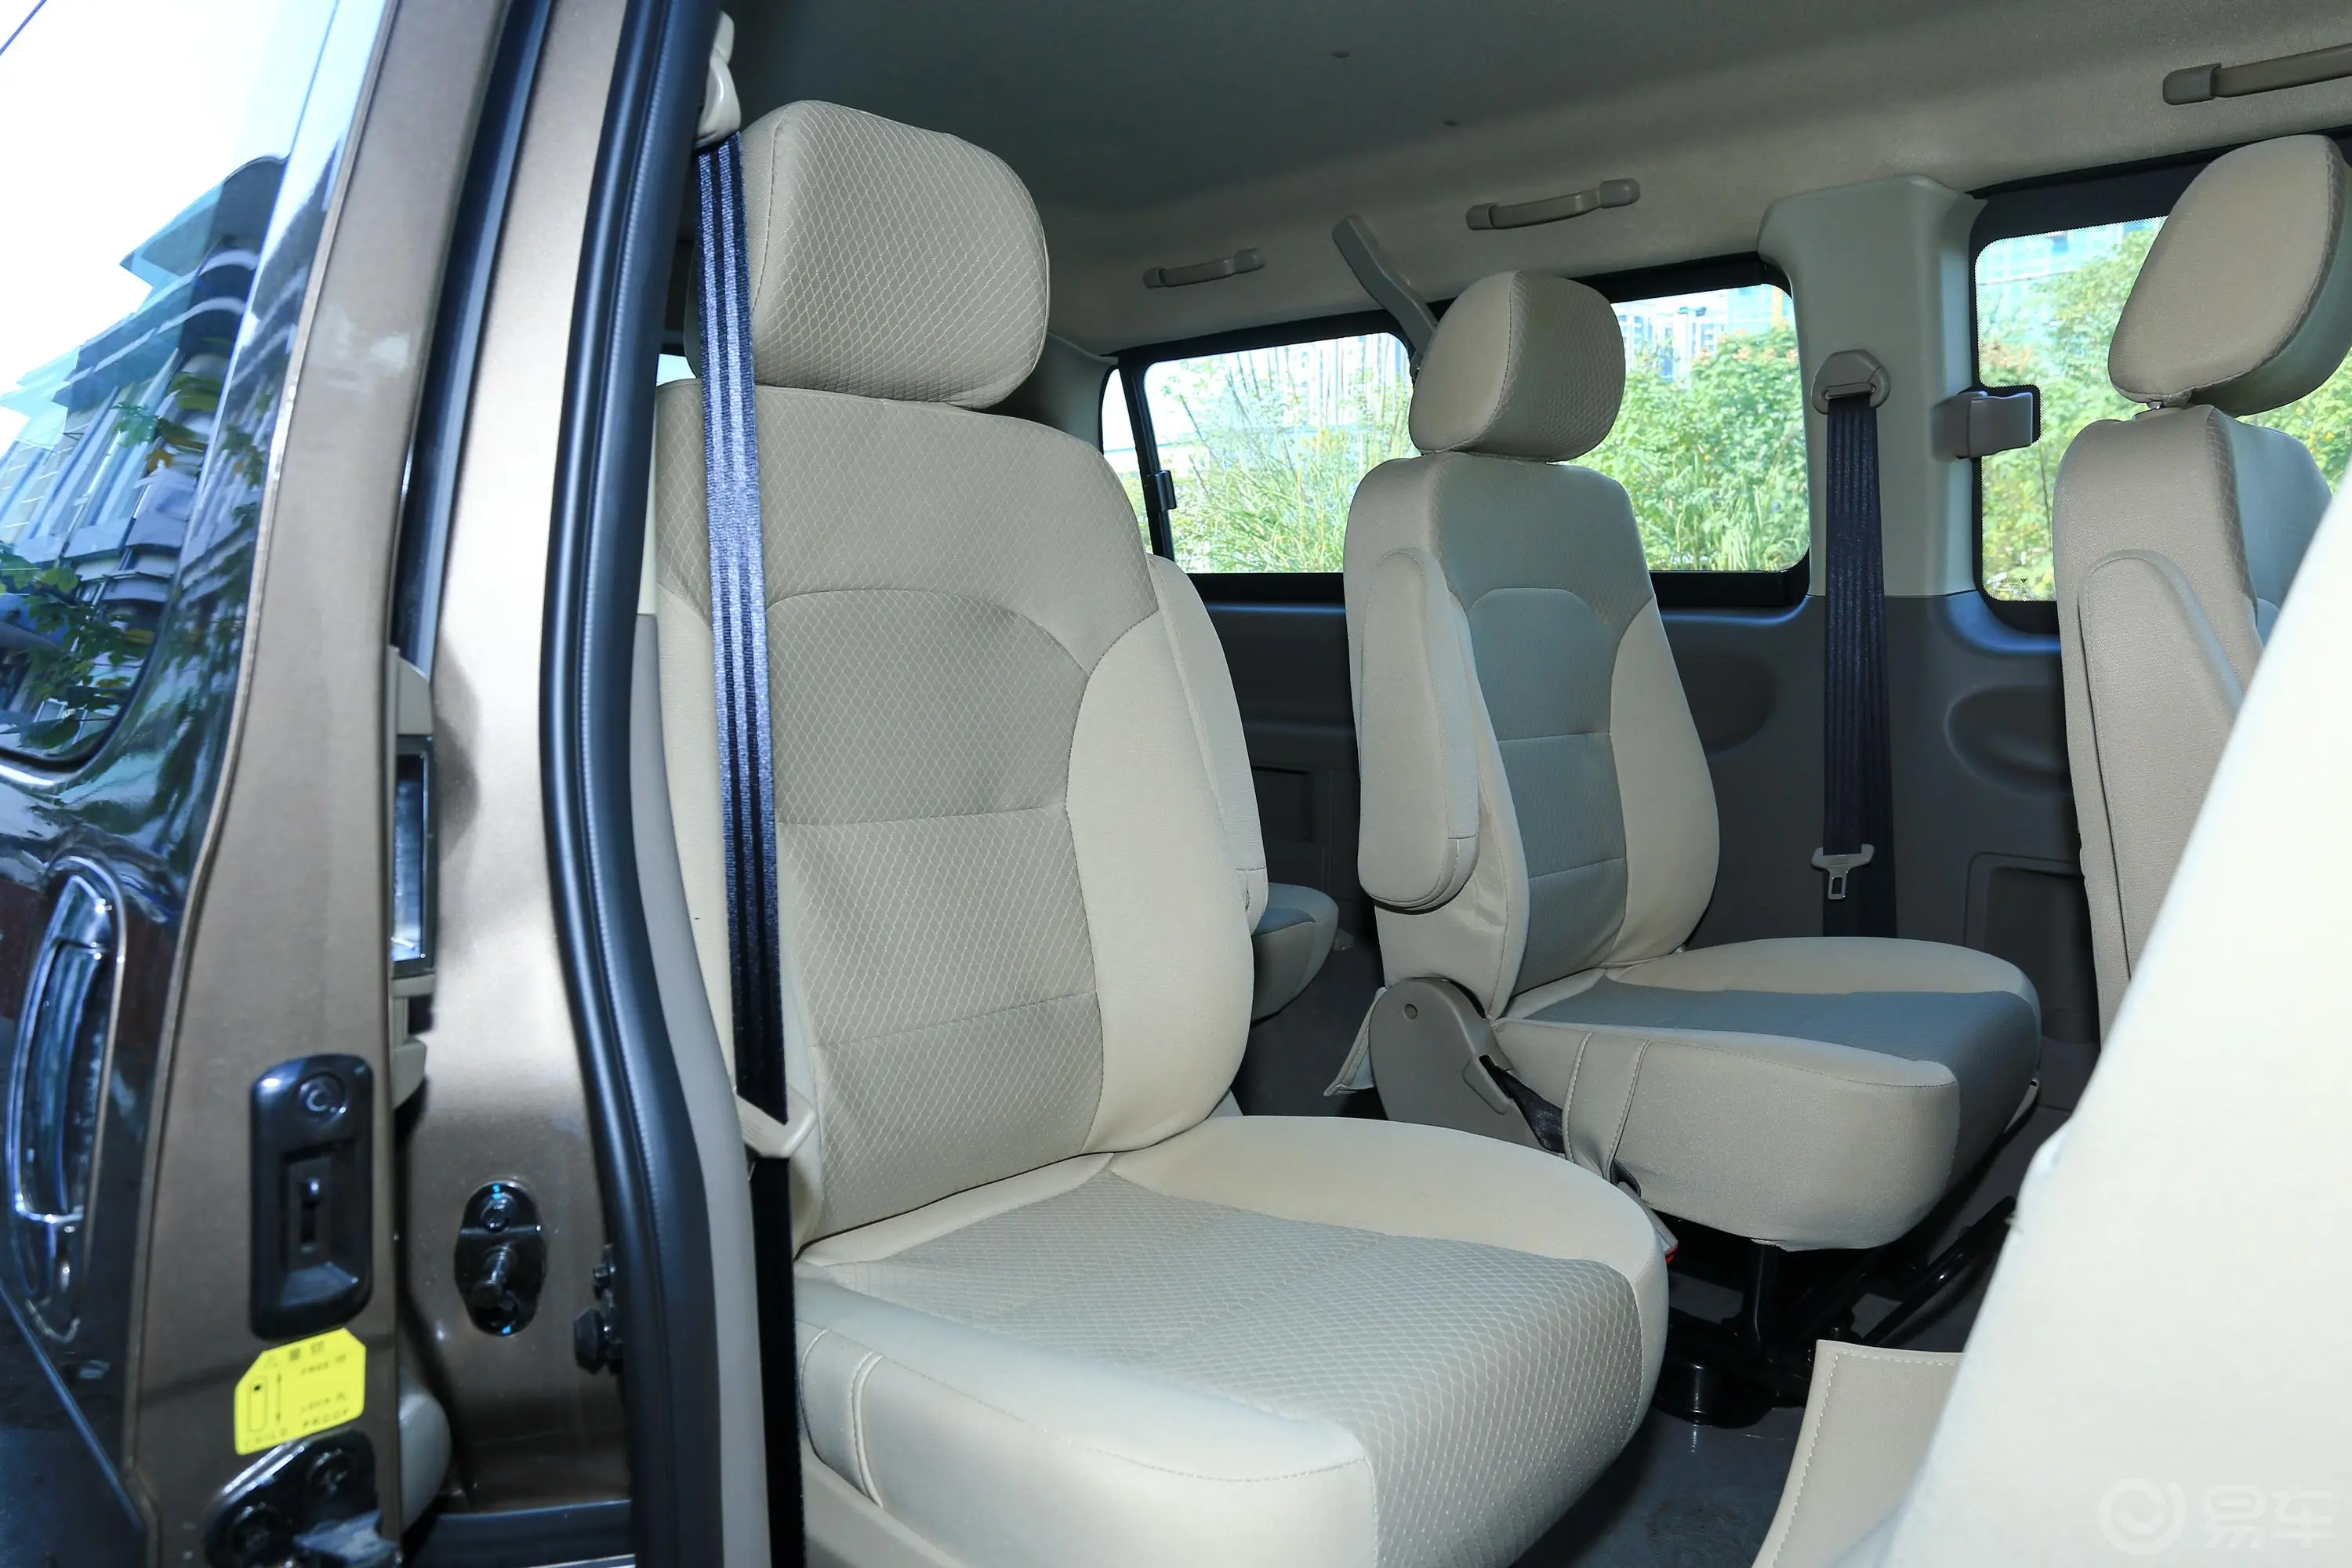 风景G5多用途乘用车 2.0L 手动 尊享版 6-9座 国VI第三排座椅